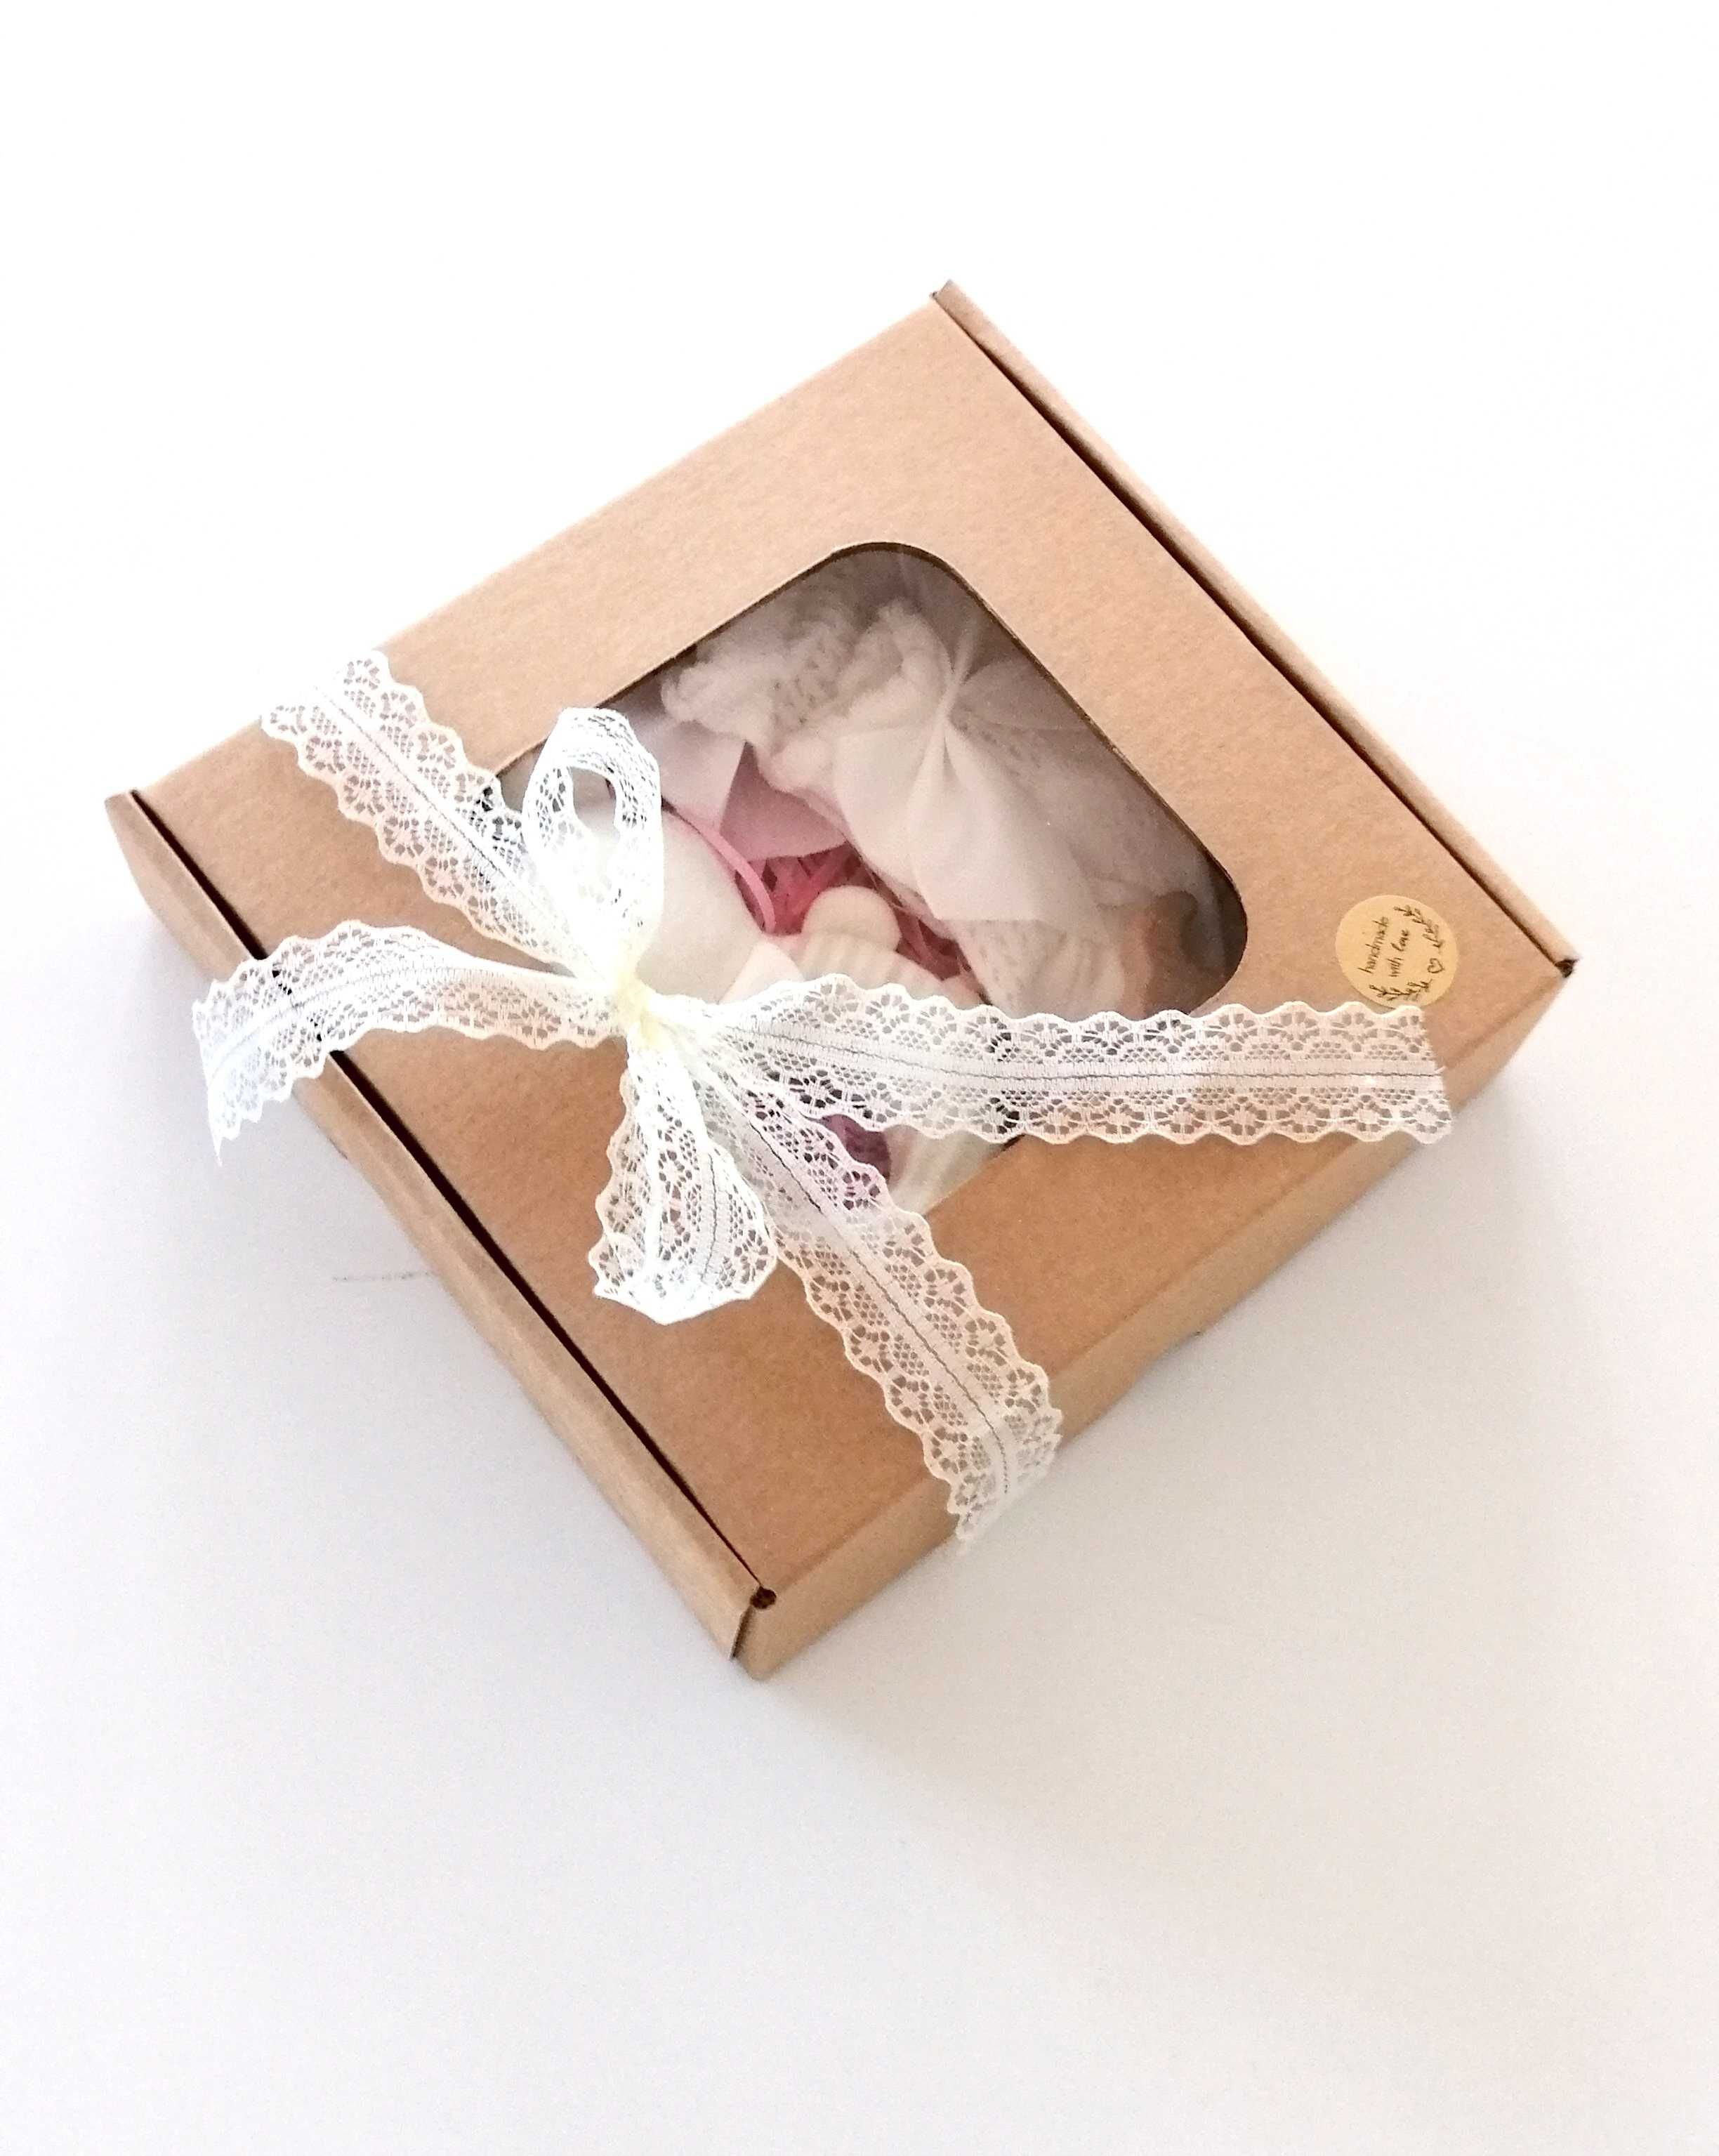 babybox gift zestaw prezentowy na baby shower narodziny dla dziecka